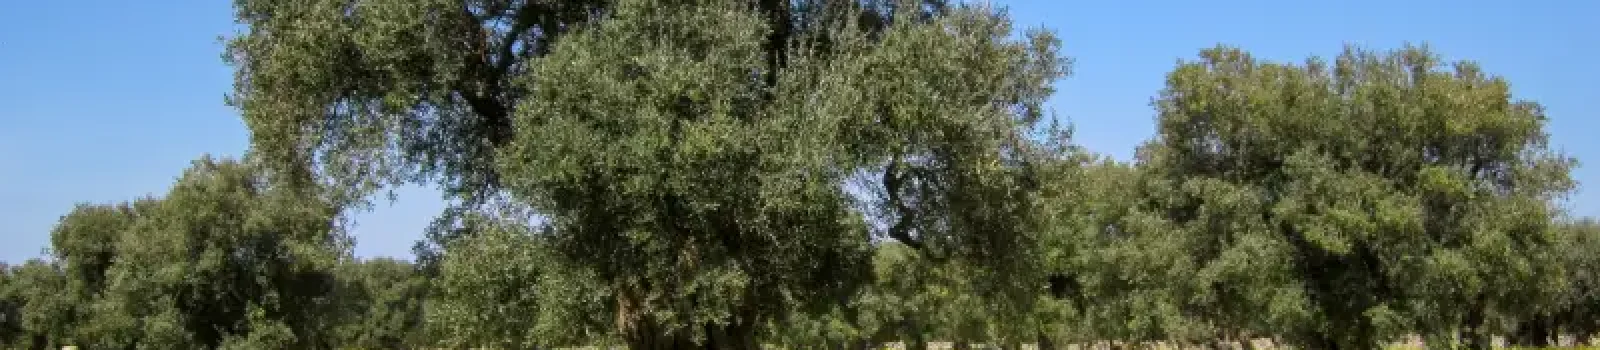 plantaciones-de-olivo-y-cambio-climatico